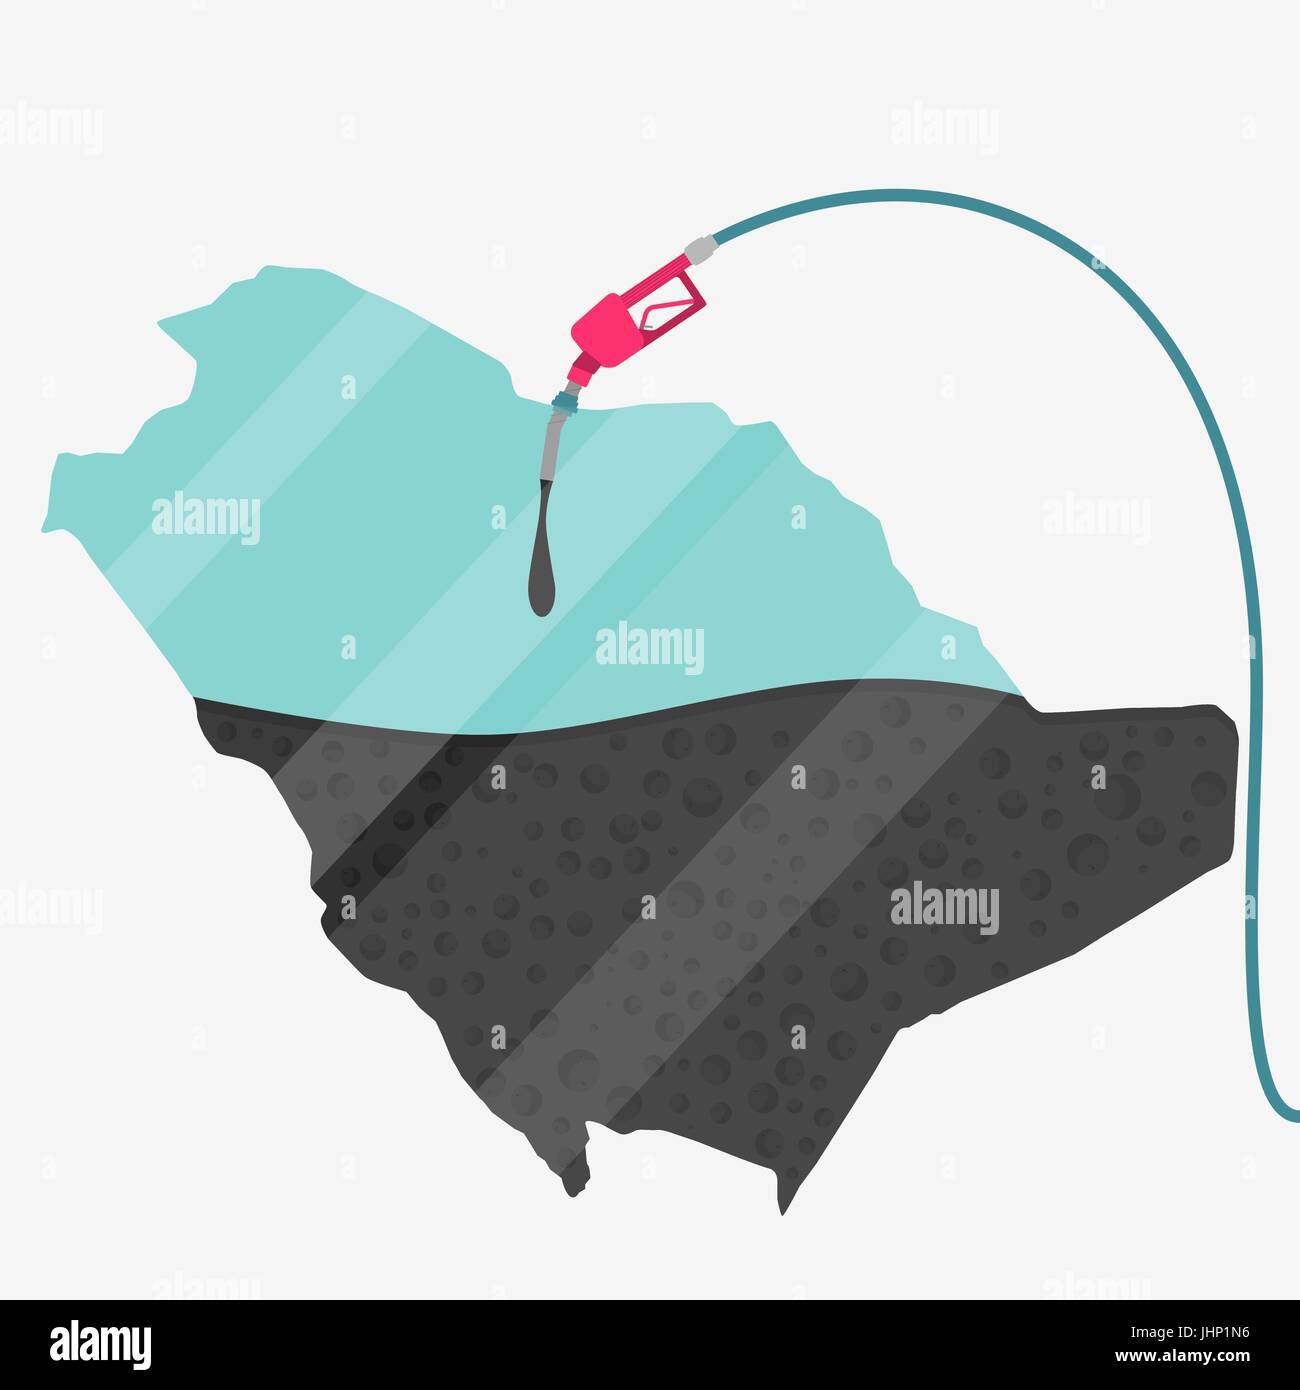 Mappa di Arabia Saudita essendo alimentato da olio. Pompa del gas alimentato mappa. Sulla mappa vi è la riflessione di vetro. Concettuale. La produzione di olio o di paesi importatori. Illustrazione Vettoriale